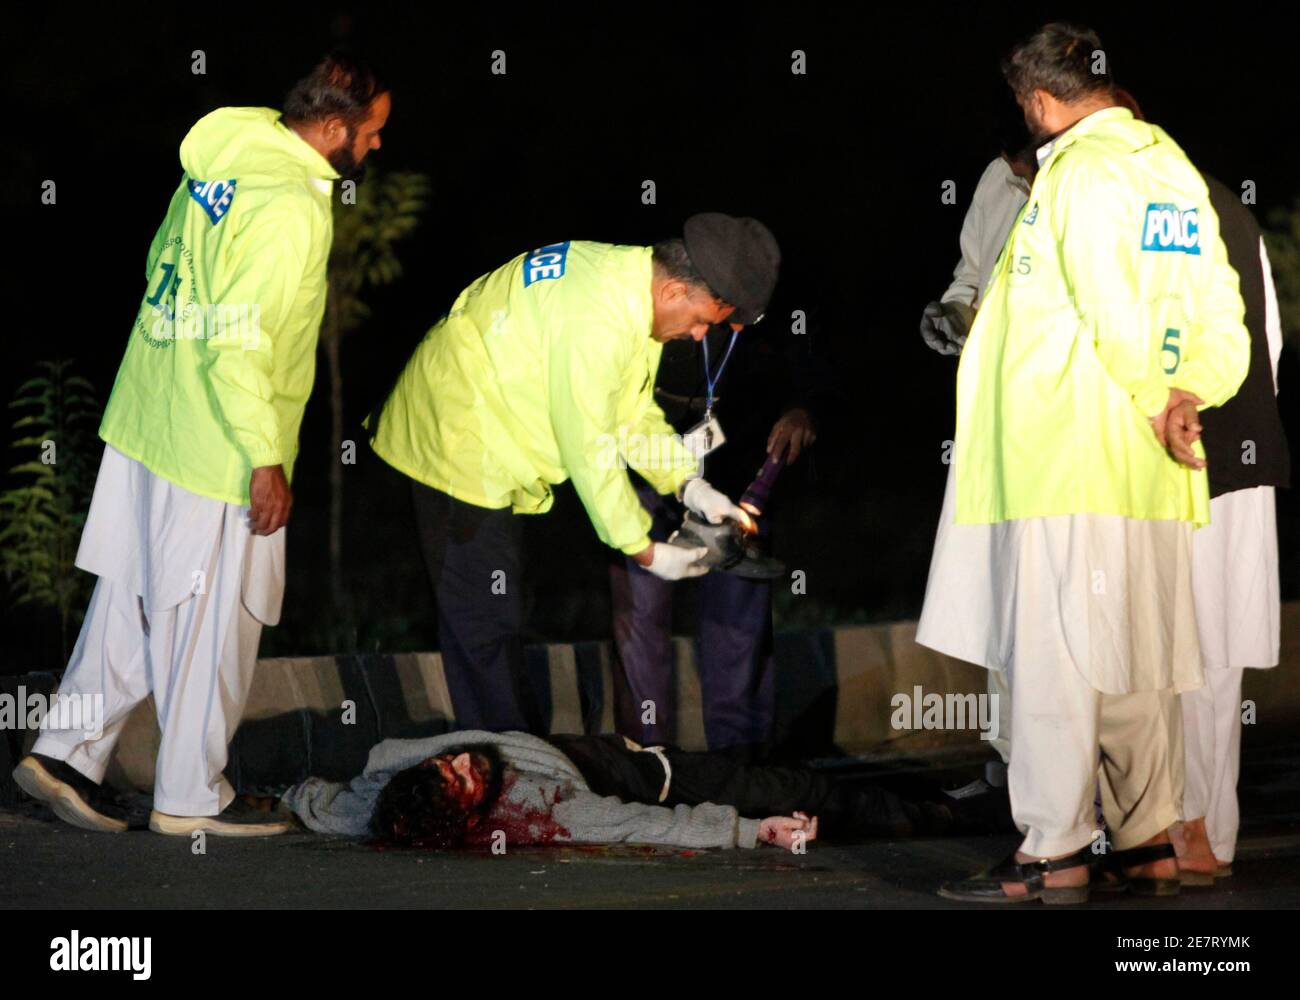 Polizeibeamte inspizieren in Islamabad am 8. November 2009 einen Schuh in der Nähe des Leibes eines Toten. Die Polizei habe am Sonntagabend einen mutmaßlichen Selbstmordattentäter nach einem gescheiterten Anschlag in Islamabad erschossen, berichteten lokale Medien. REUTERS/FAISAL MAHMOOD (PAKISTAN KONFLIKT POLITIK KRIMINALITÄT GESETZ) Stockfoto